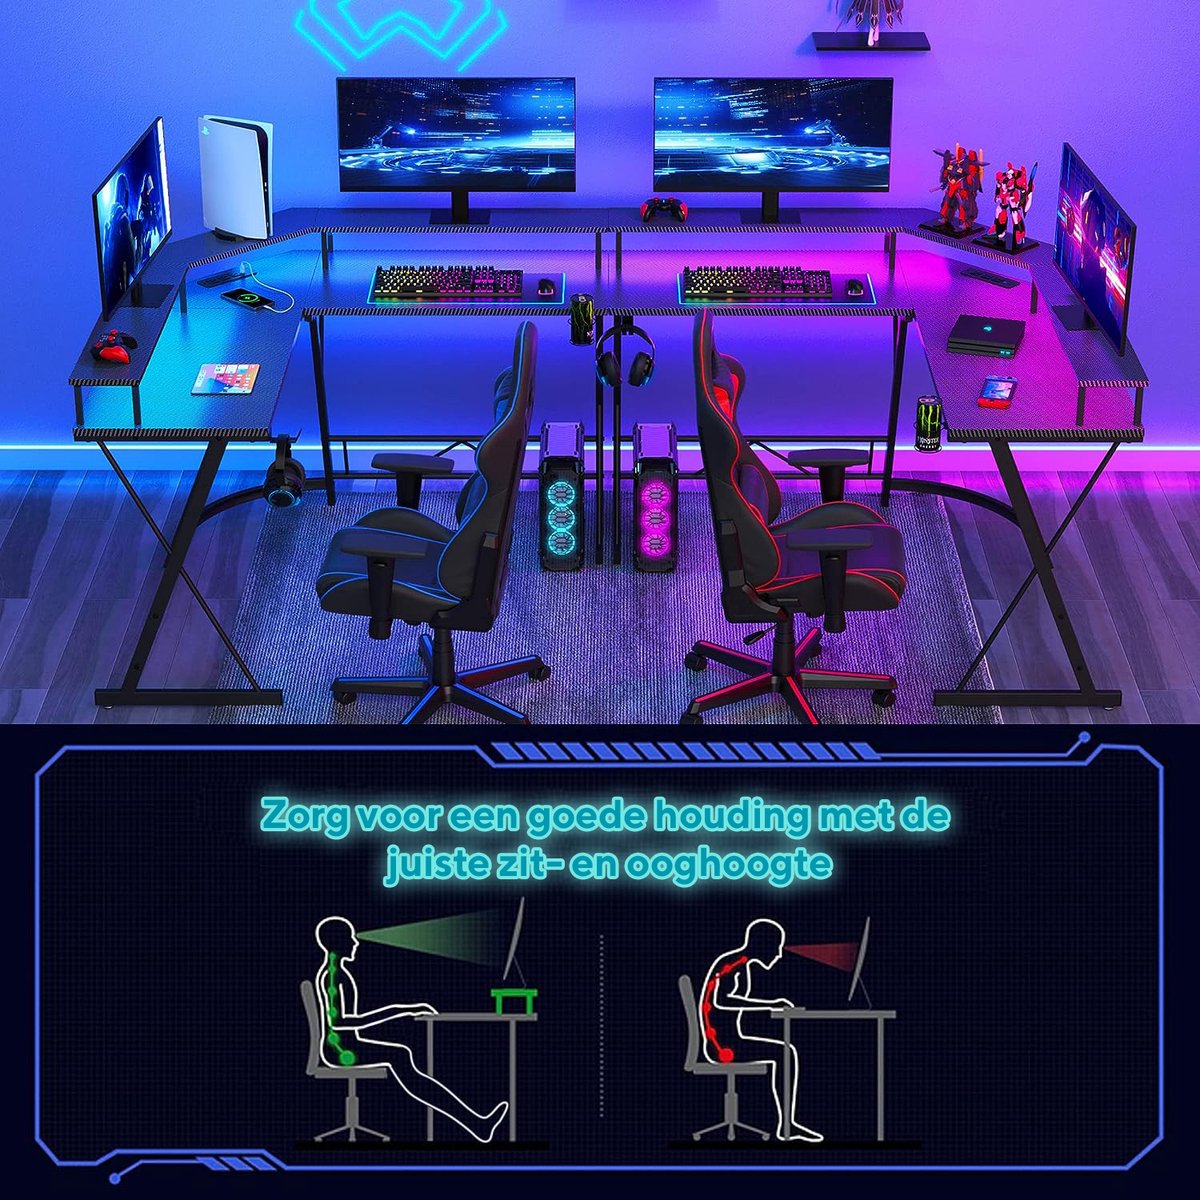 Xergonomic Game bureau – Hoekbureau - Gaming tafel - Computertafel – LED-Verlichting - 2 EU stopcontacten & 2 USB-poorten ingebouwd – 127 x 127 x 74.4 cm – Zwart